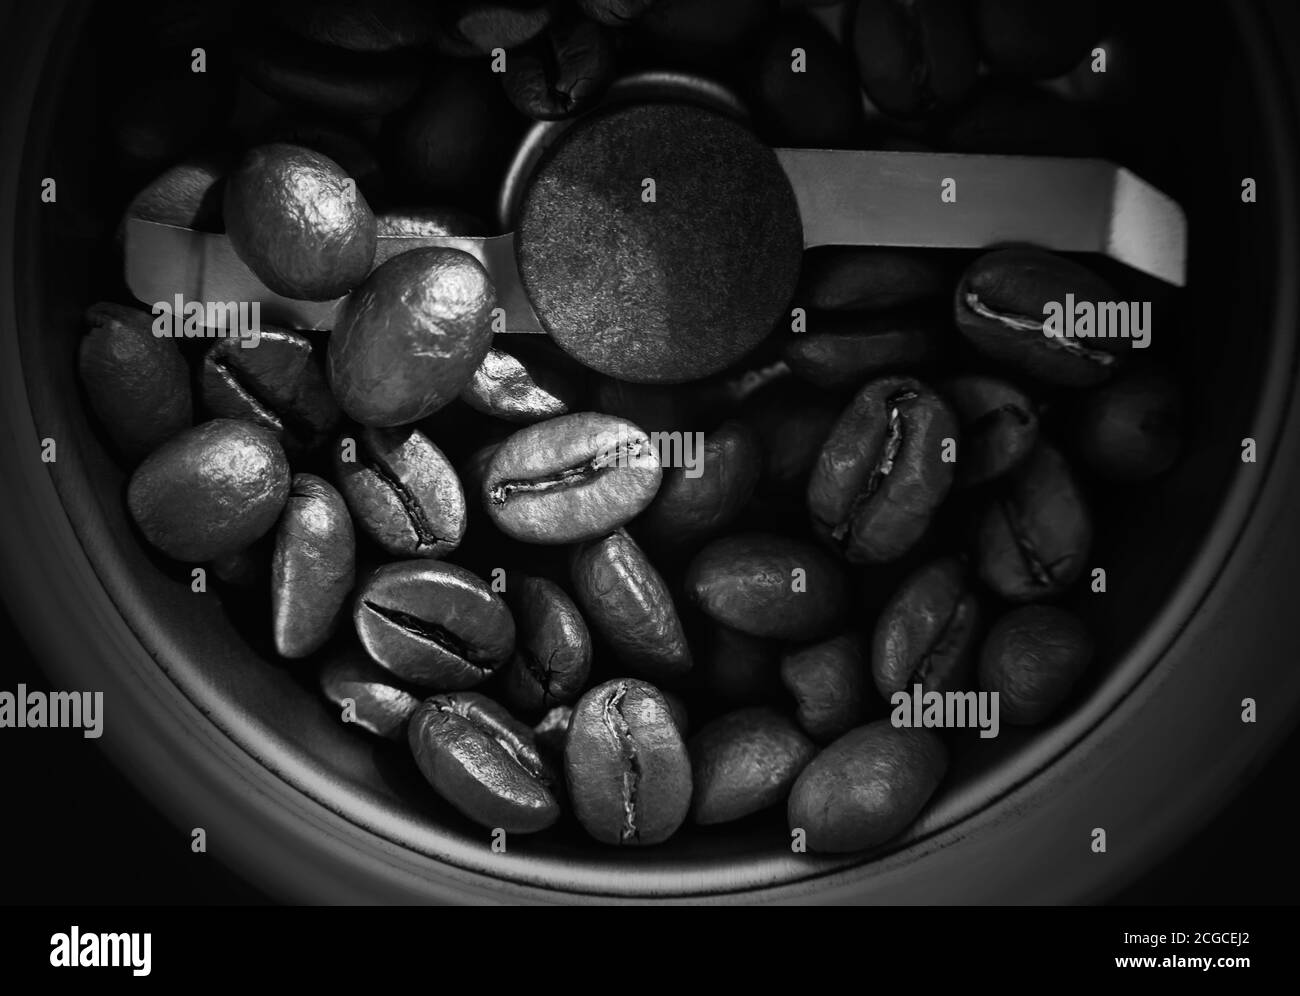 Image en noir et blanc des grains de café torréfiés qui se trouvent dans le moulin à café, et bientôt ils deviendront du café moulu. La vue du dessus. Banque D'Images